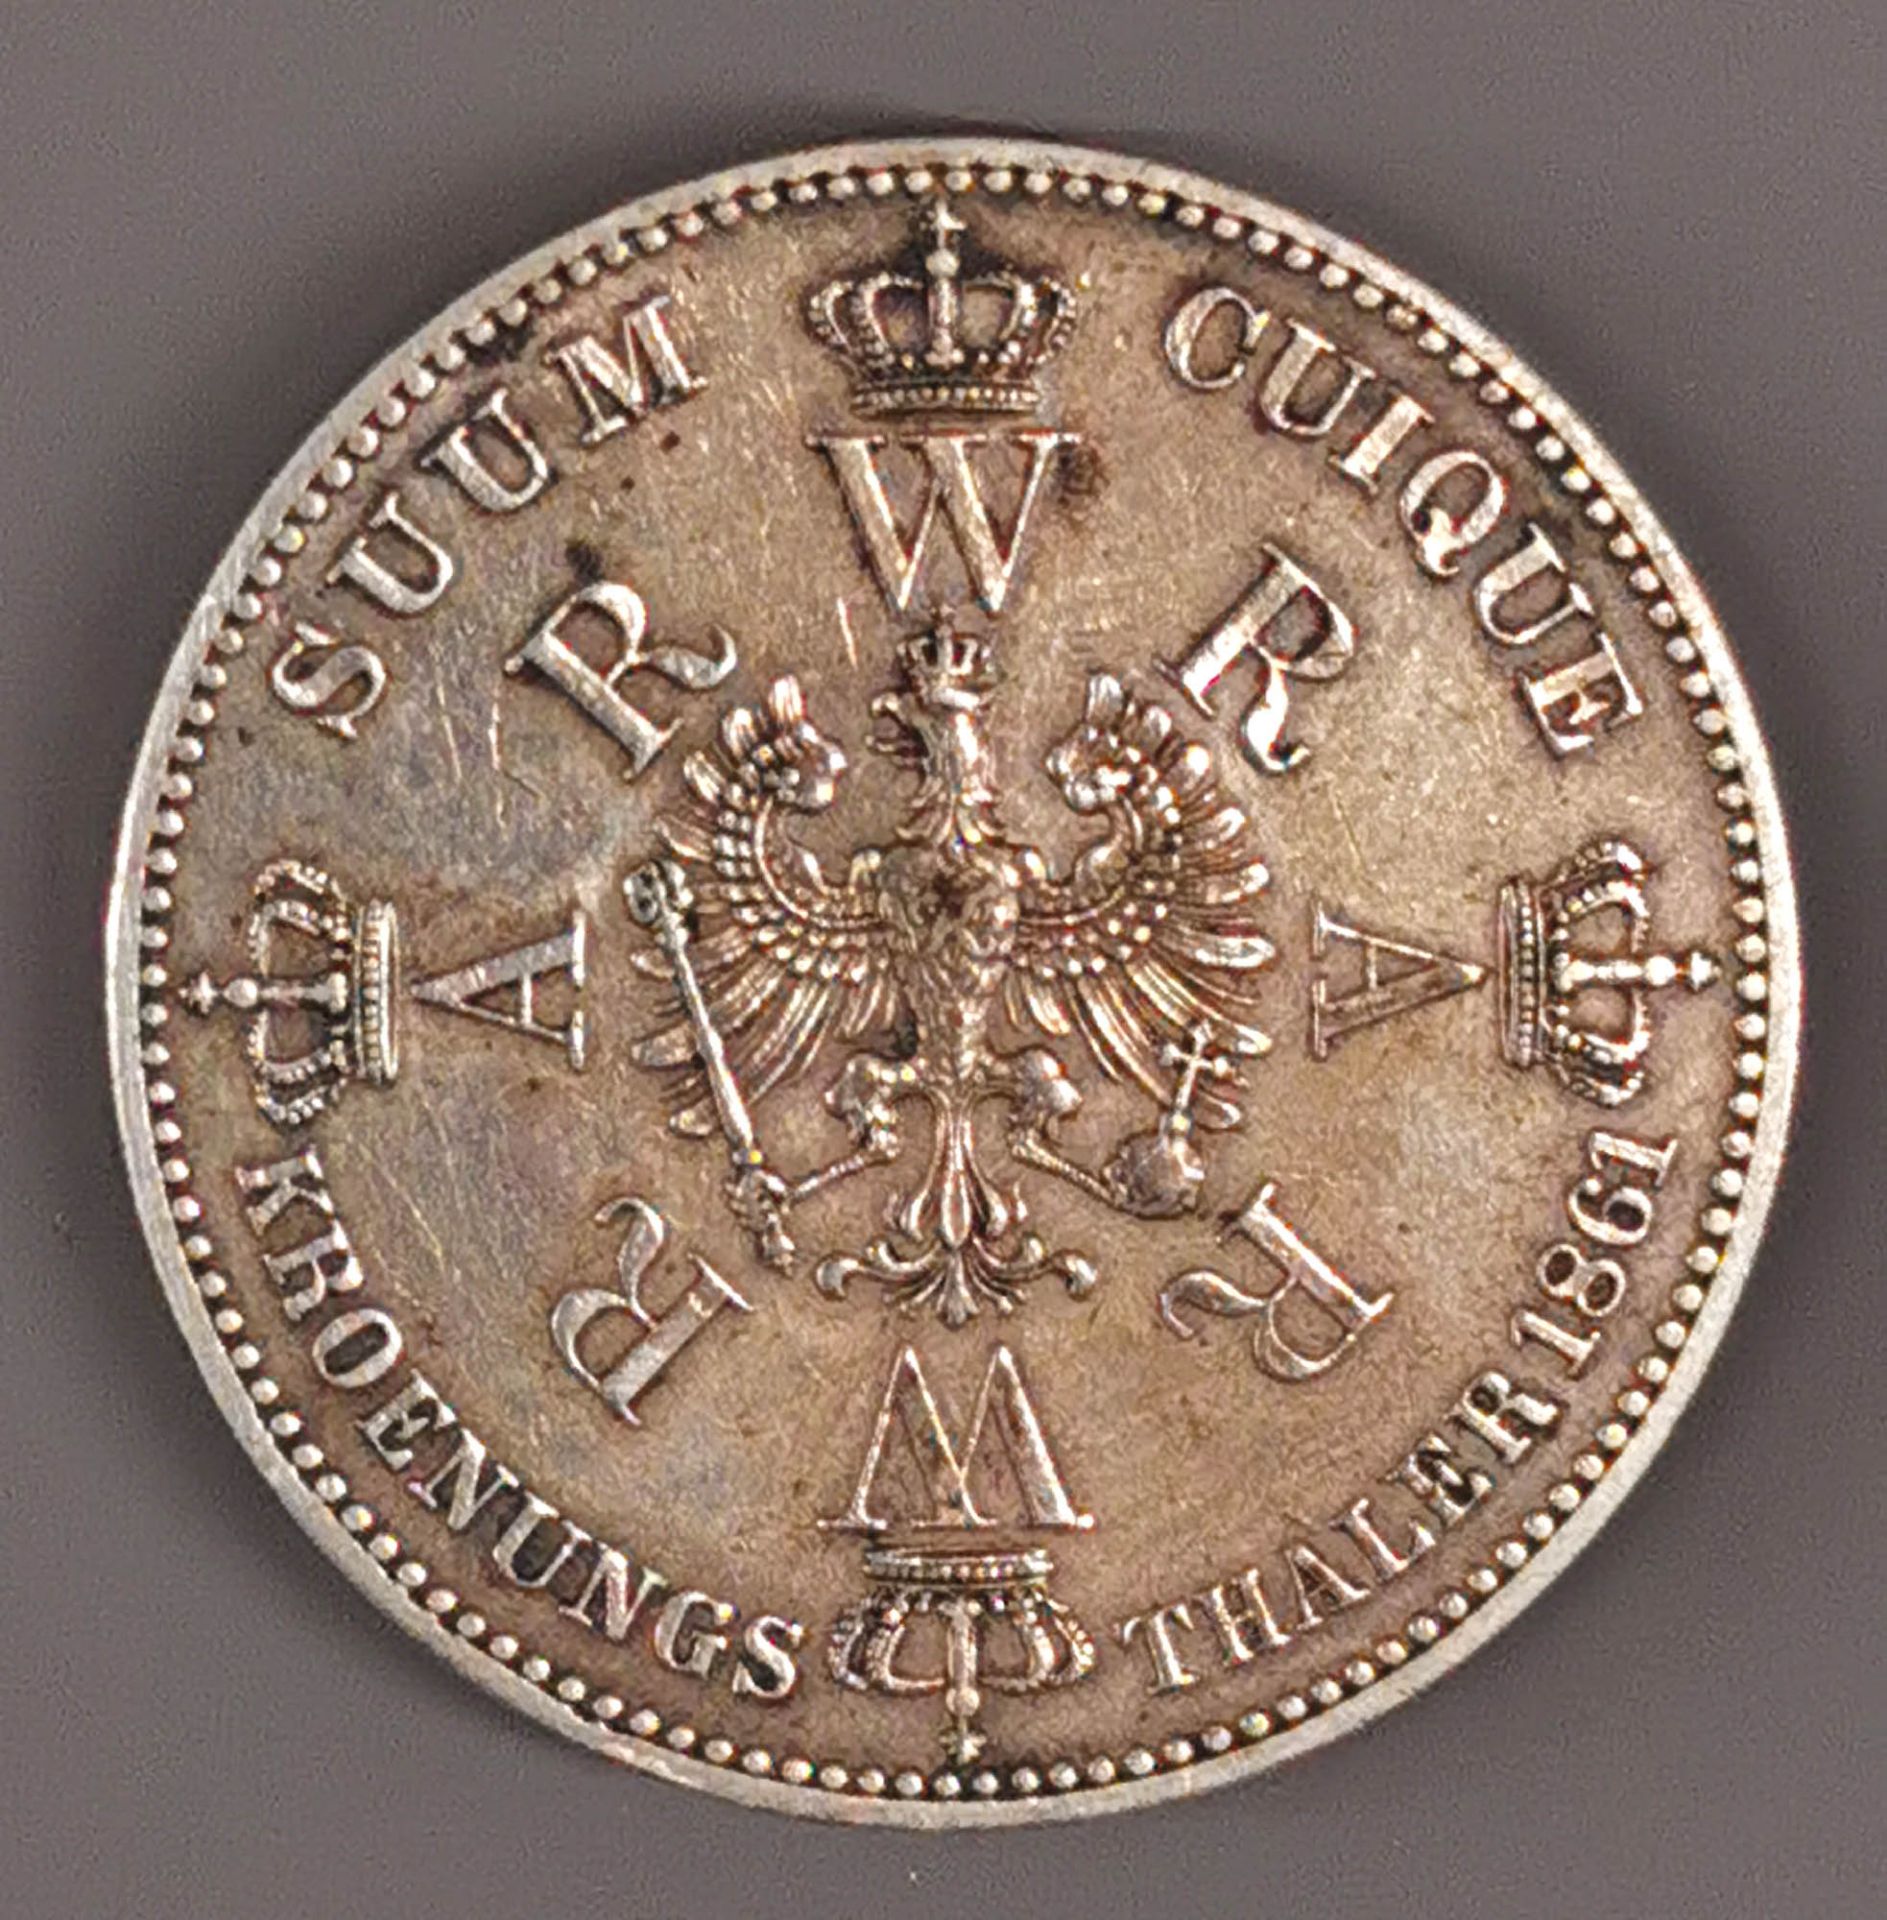 Silbermünze 1 Thaler Kroenungs Thaler Preussen 1861 - Image 2 of 2